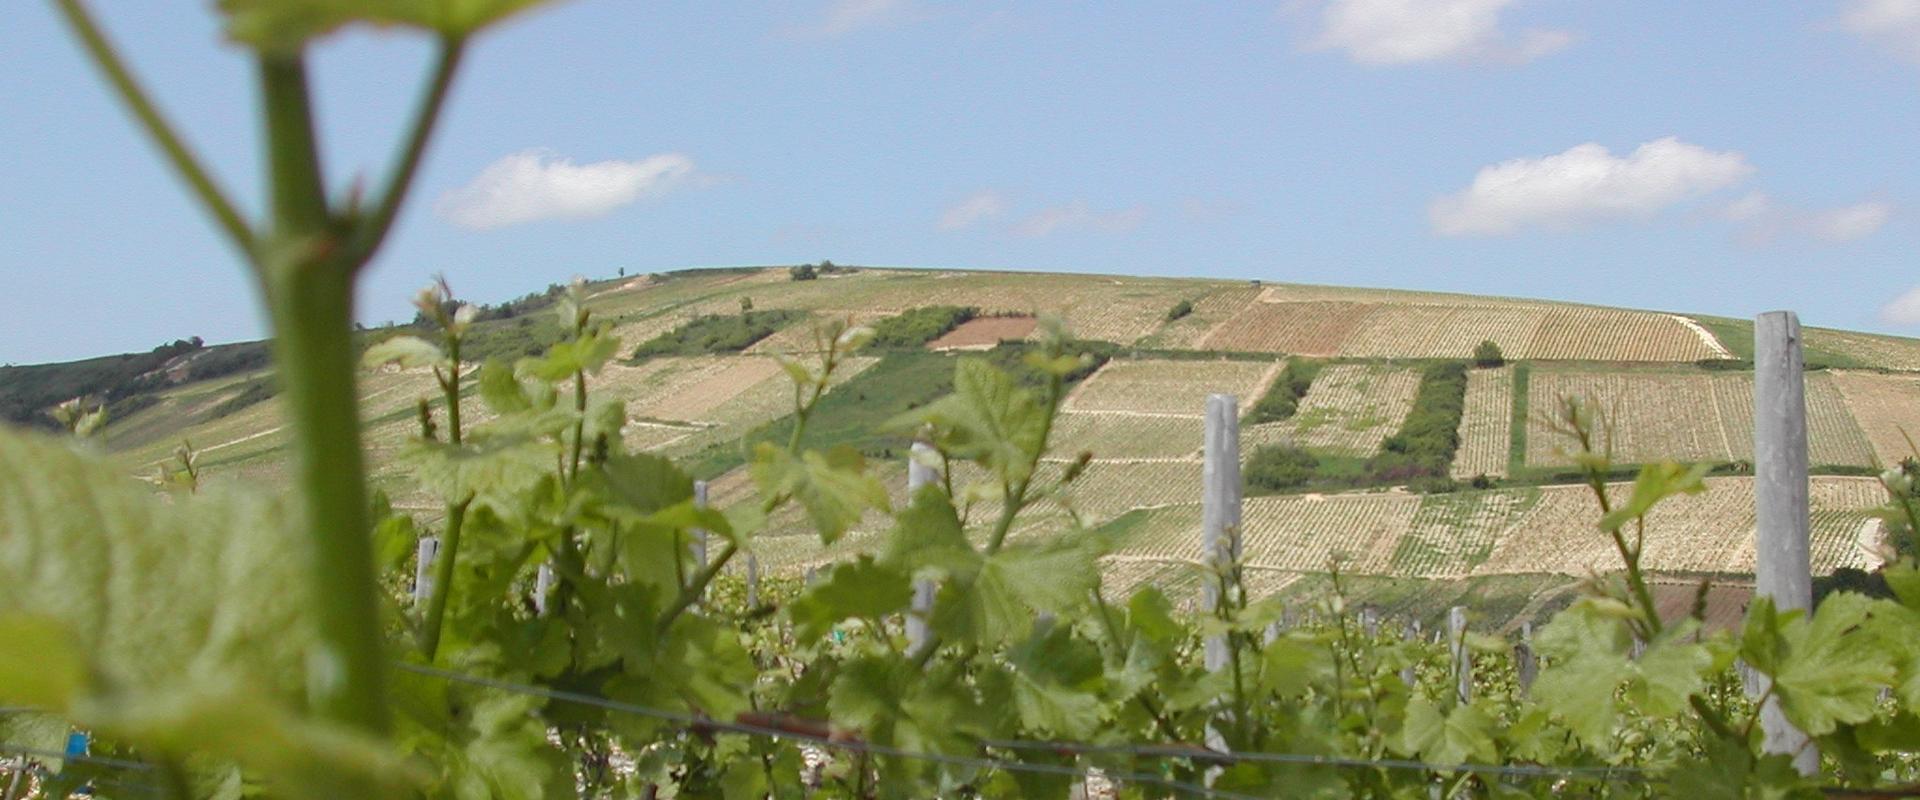 The hillsides of the Sancerre vineyard (Sancerre, Cher, France, 2003).